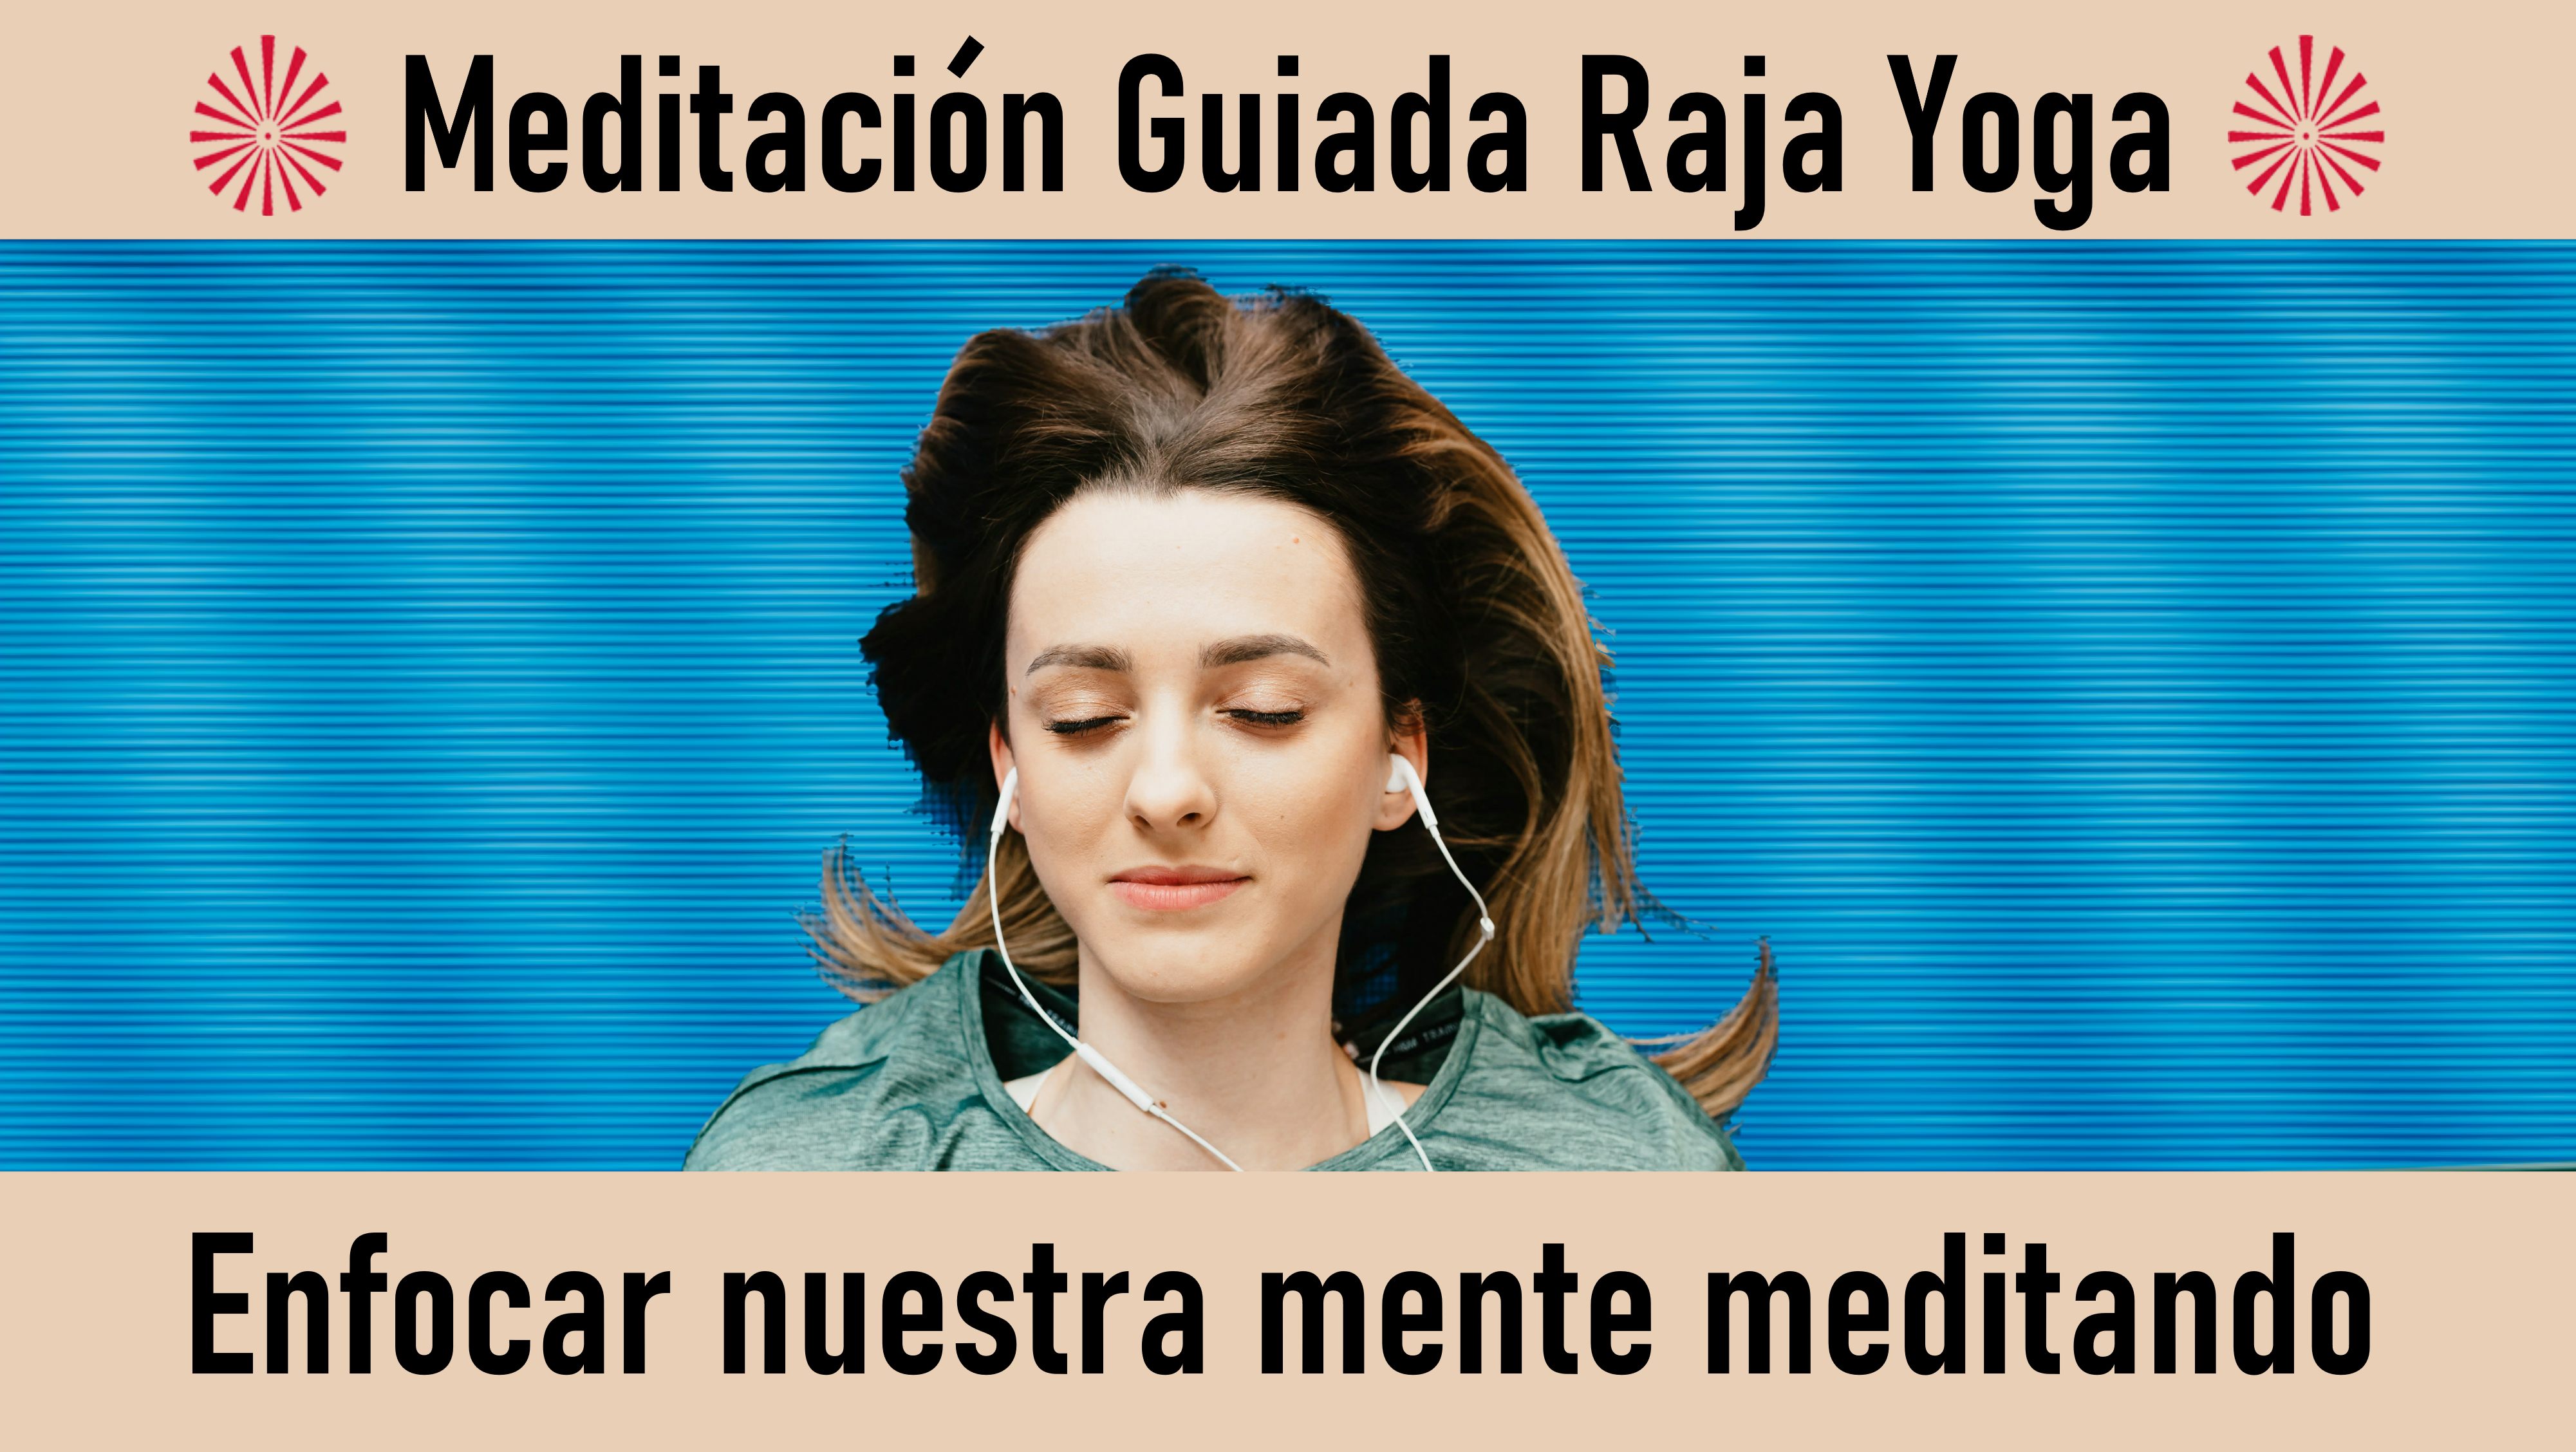 Meditación Raja Yoga: Enfocar nuestra mente meditando (2 Septiembre 2020) On-line desde Sevilla